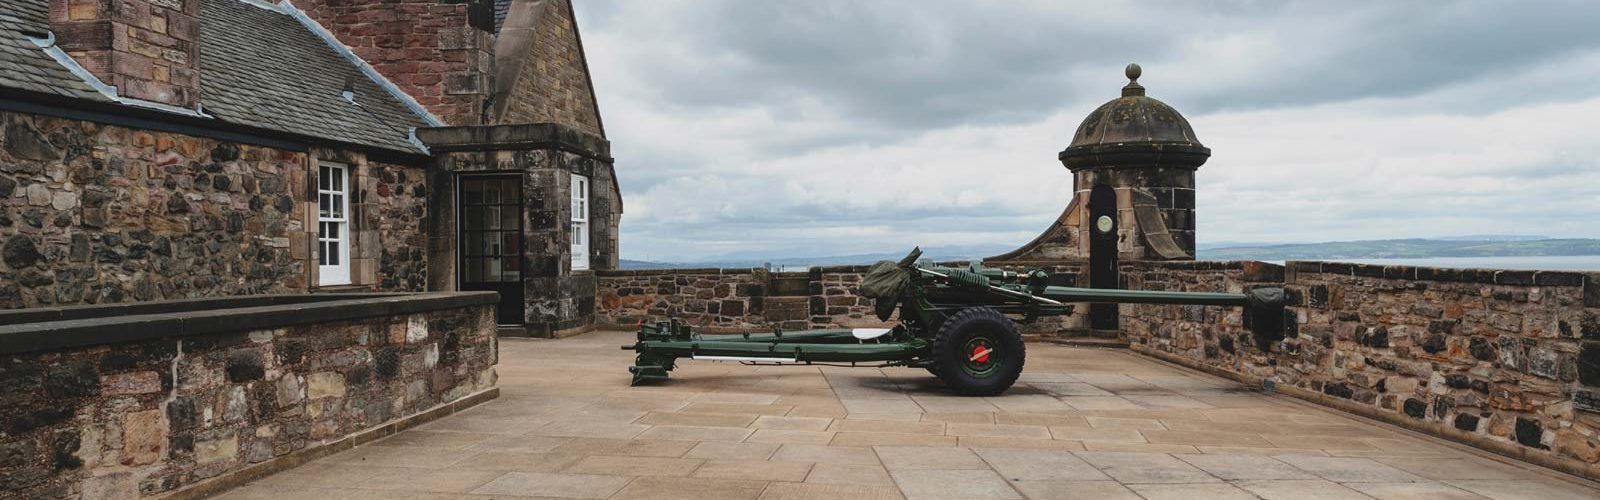 The One O'Clock Gun at Edinburgh Castle